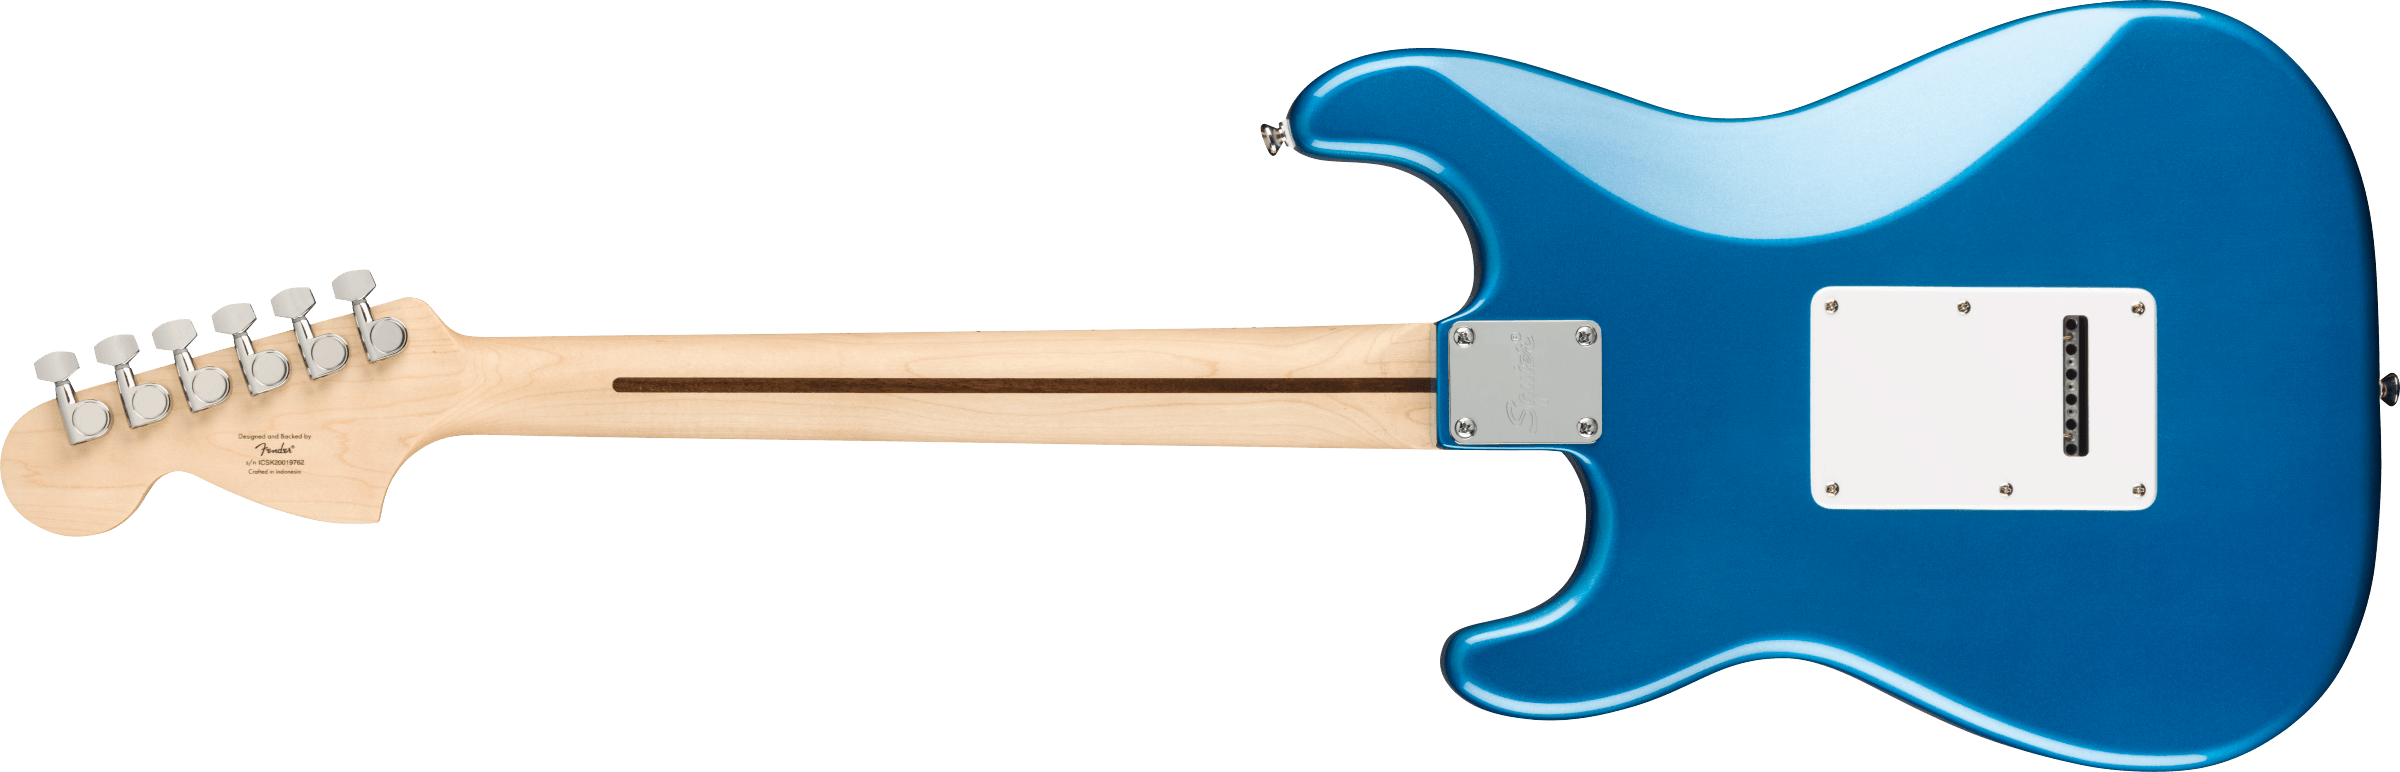 Squier Strat Affinity Hss Pack +fender Frontman 15g 2021 Trem Mn - Lake Placid Blue - E-Gitarre Set - Variation 2